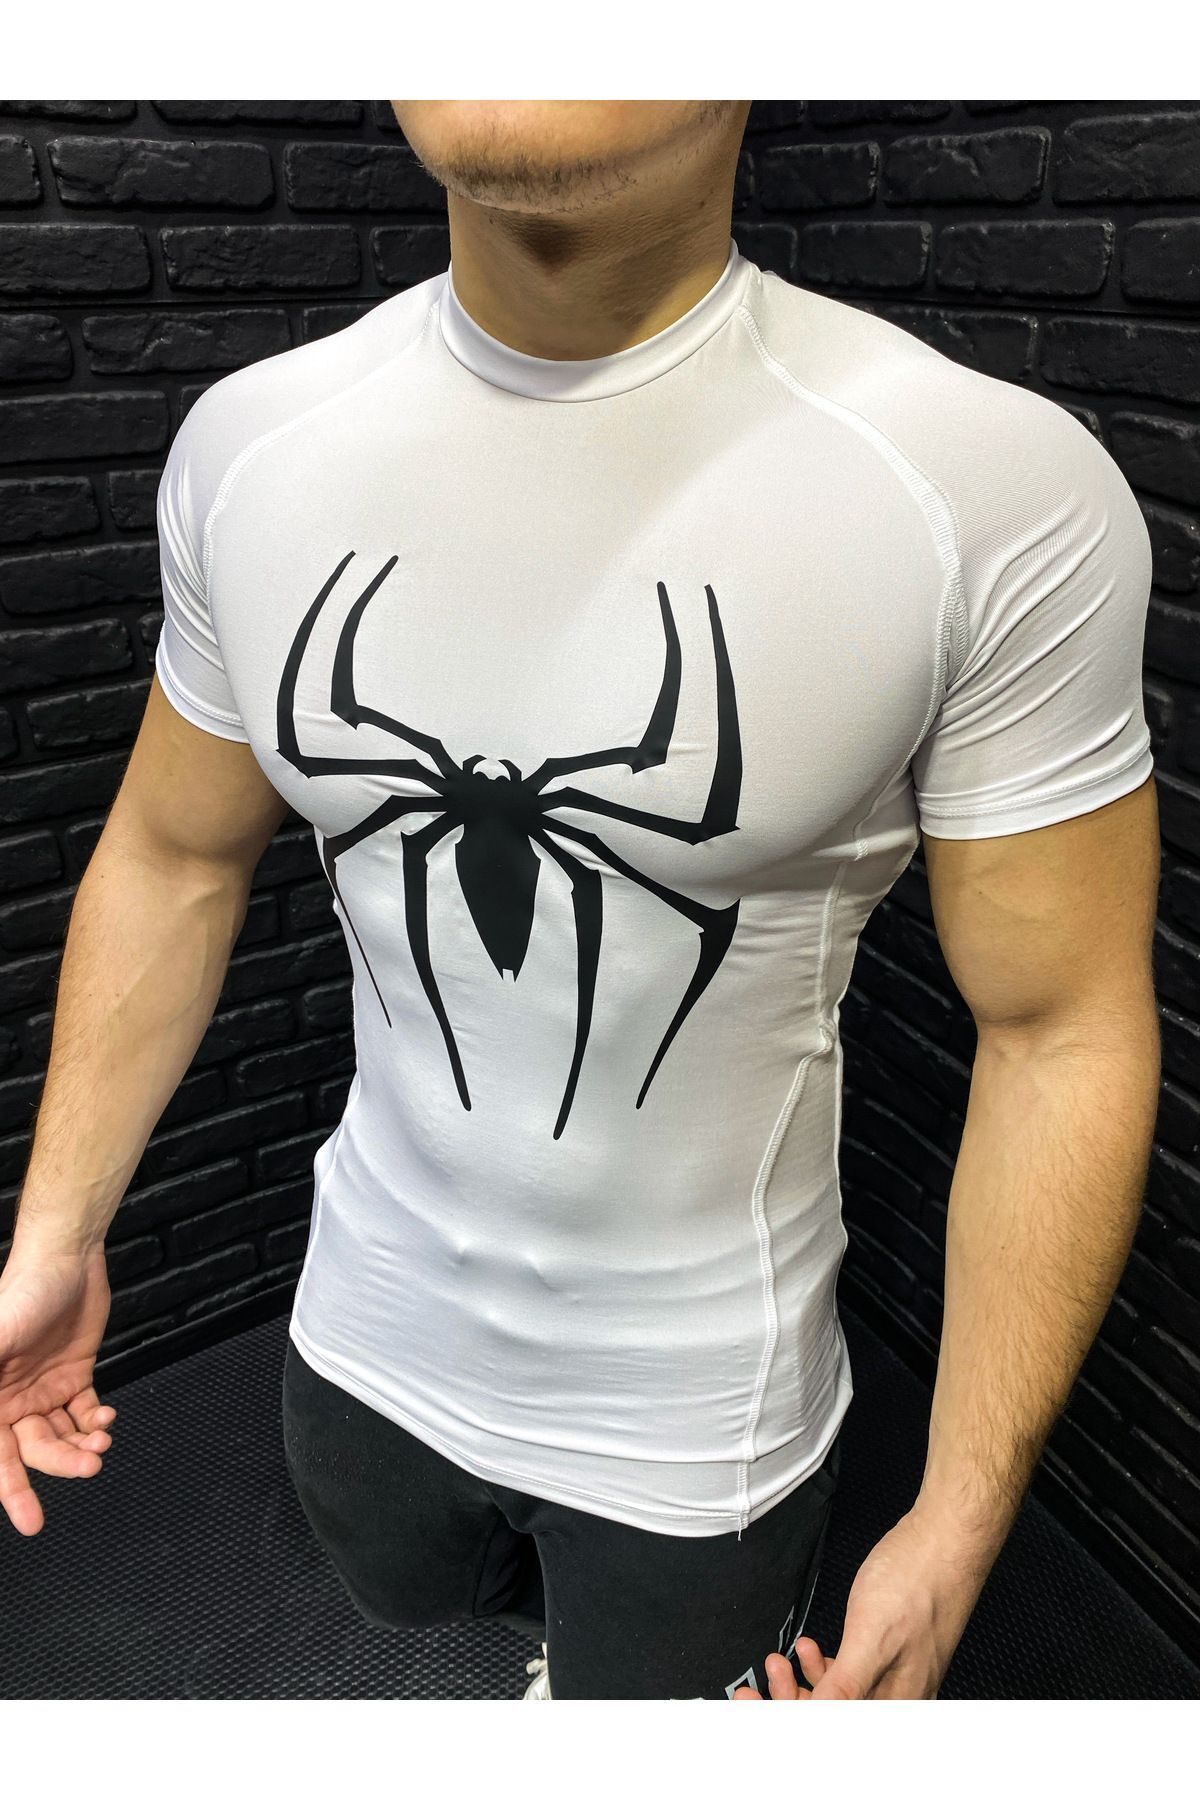 YHM Compression T-shirt Fit Spor Erkek Sıkı Tişört Kısa Kollu Beyaz Spiderman Baskılı